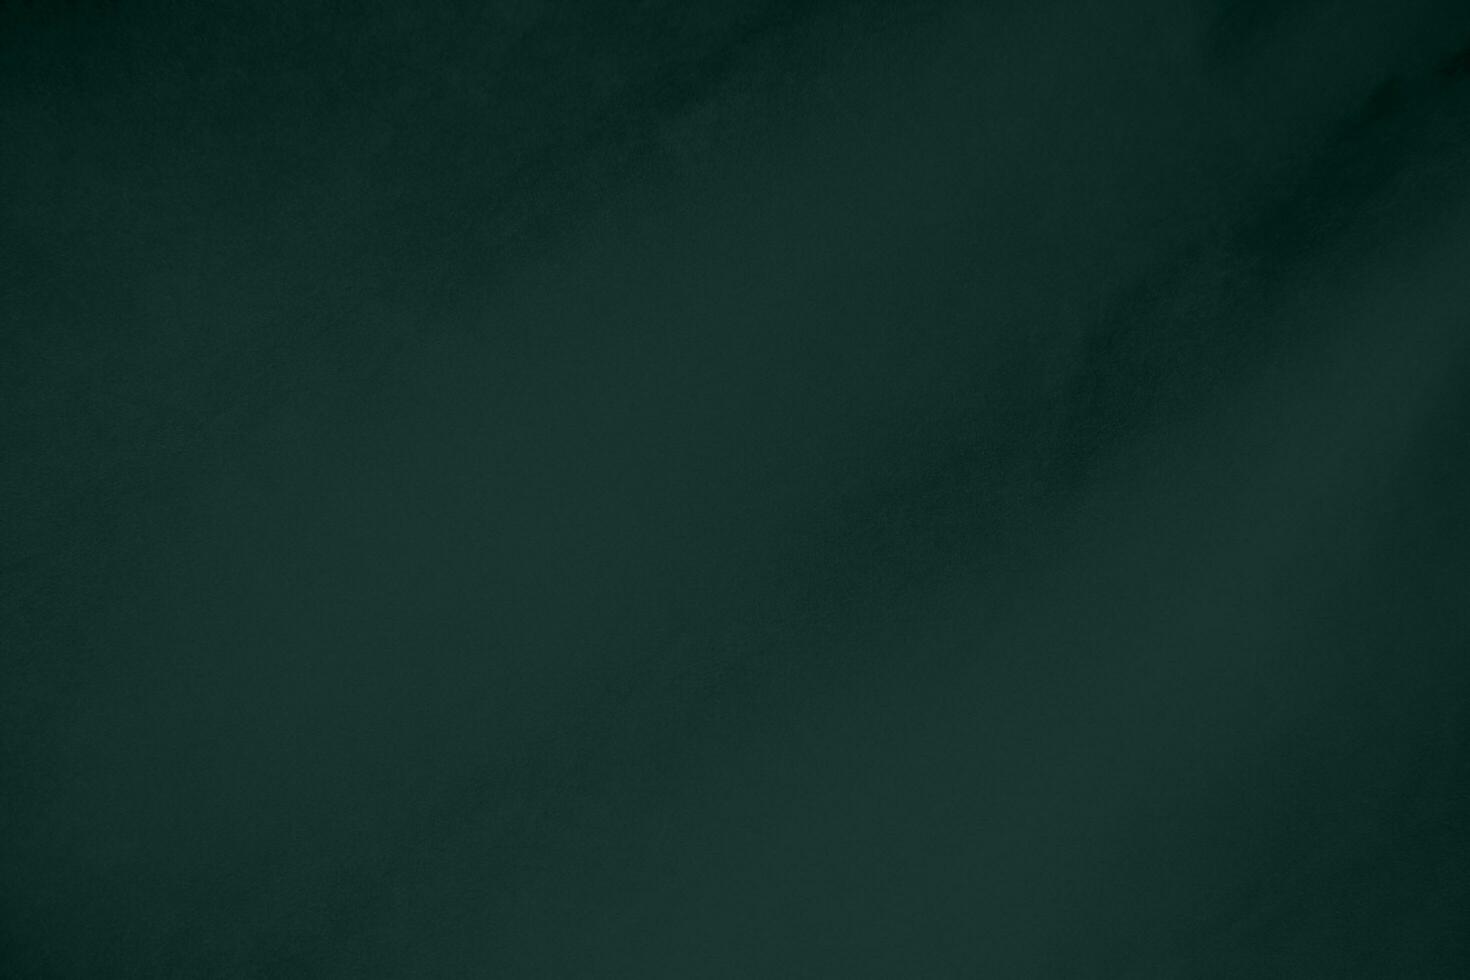 groen fluweel kleding stof structuur gebruikt net zo achtergrond. smaragd kleur panne kleding stof achtergrond van zacht en glad textiel materiaal. verpletterd fluweel .luxe smaragd toon voor zijde.. foto